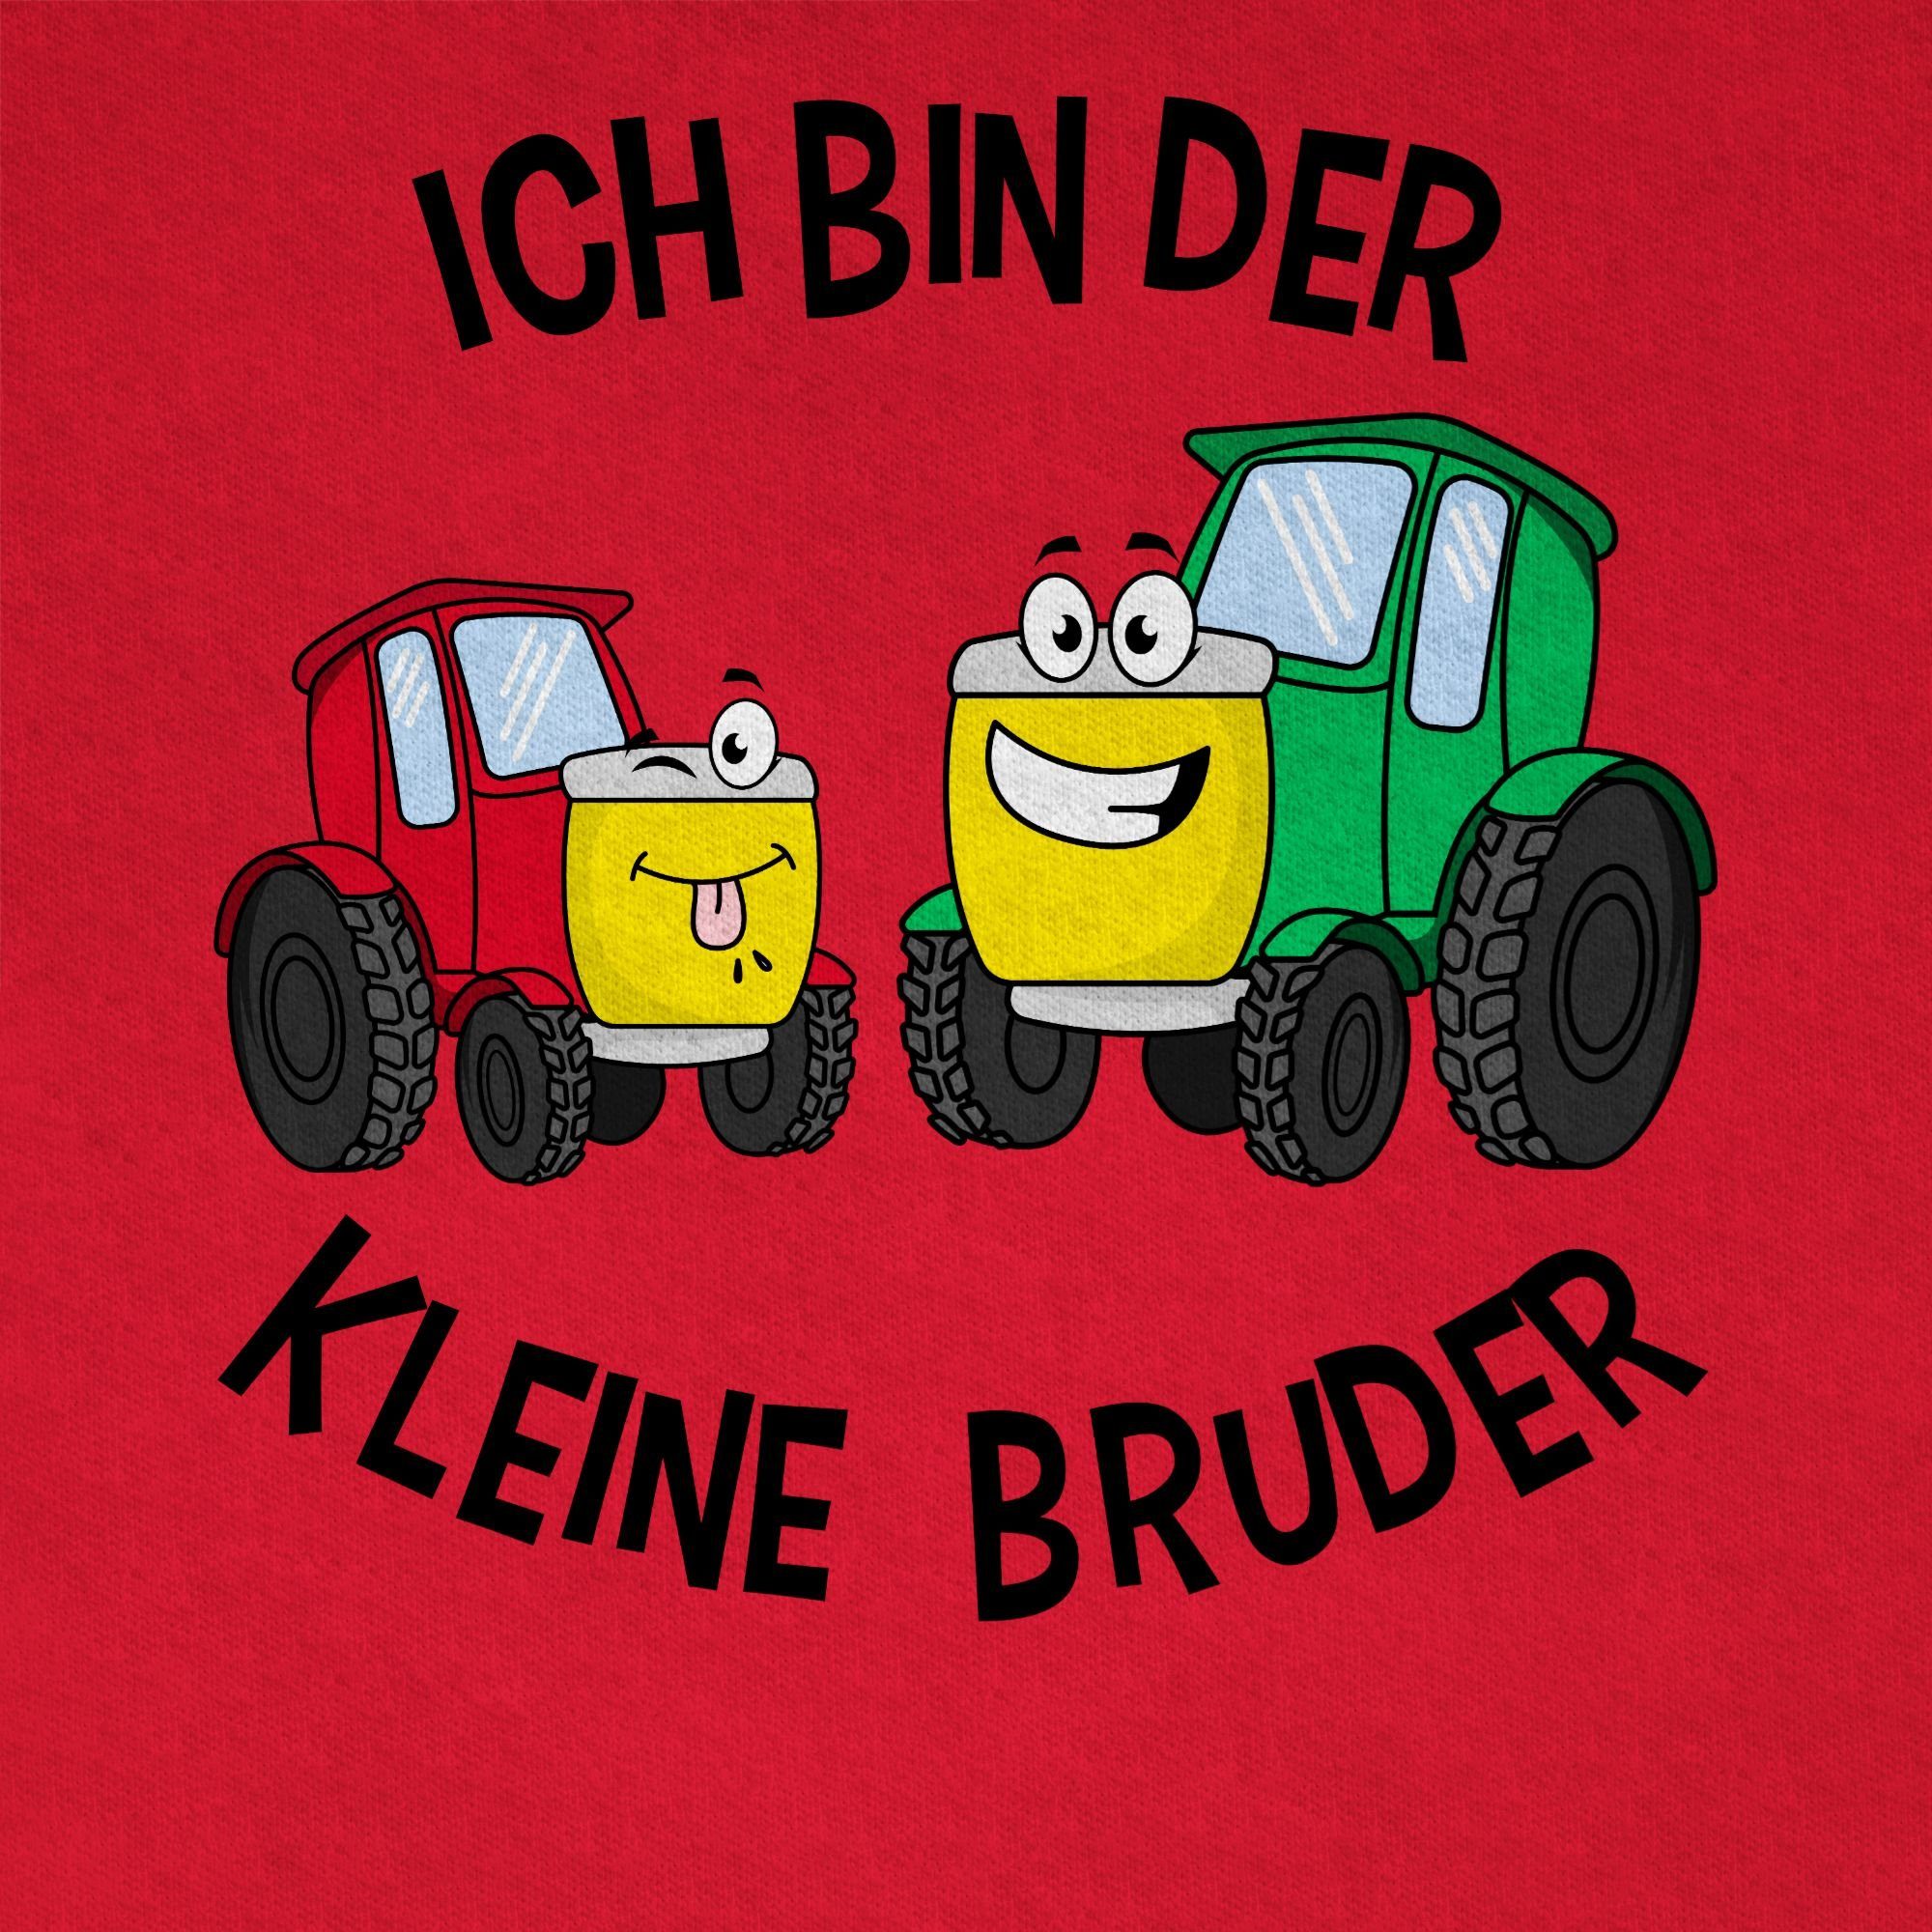 Bruder Traktor kleine Ich T-Shirt Bruder Shirtracer Kleiner bin der 3 Rot